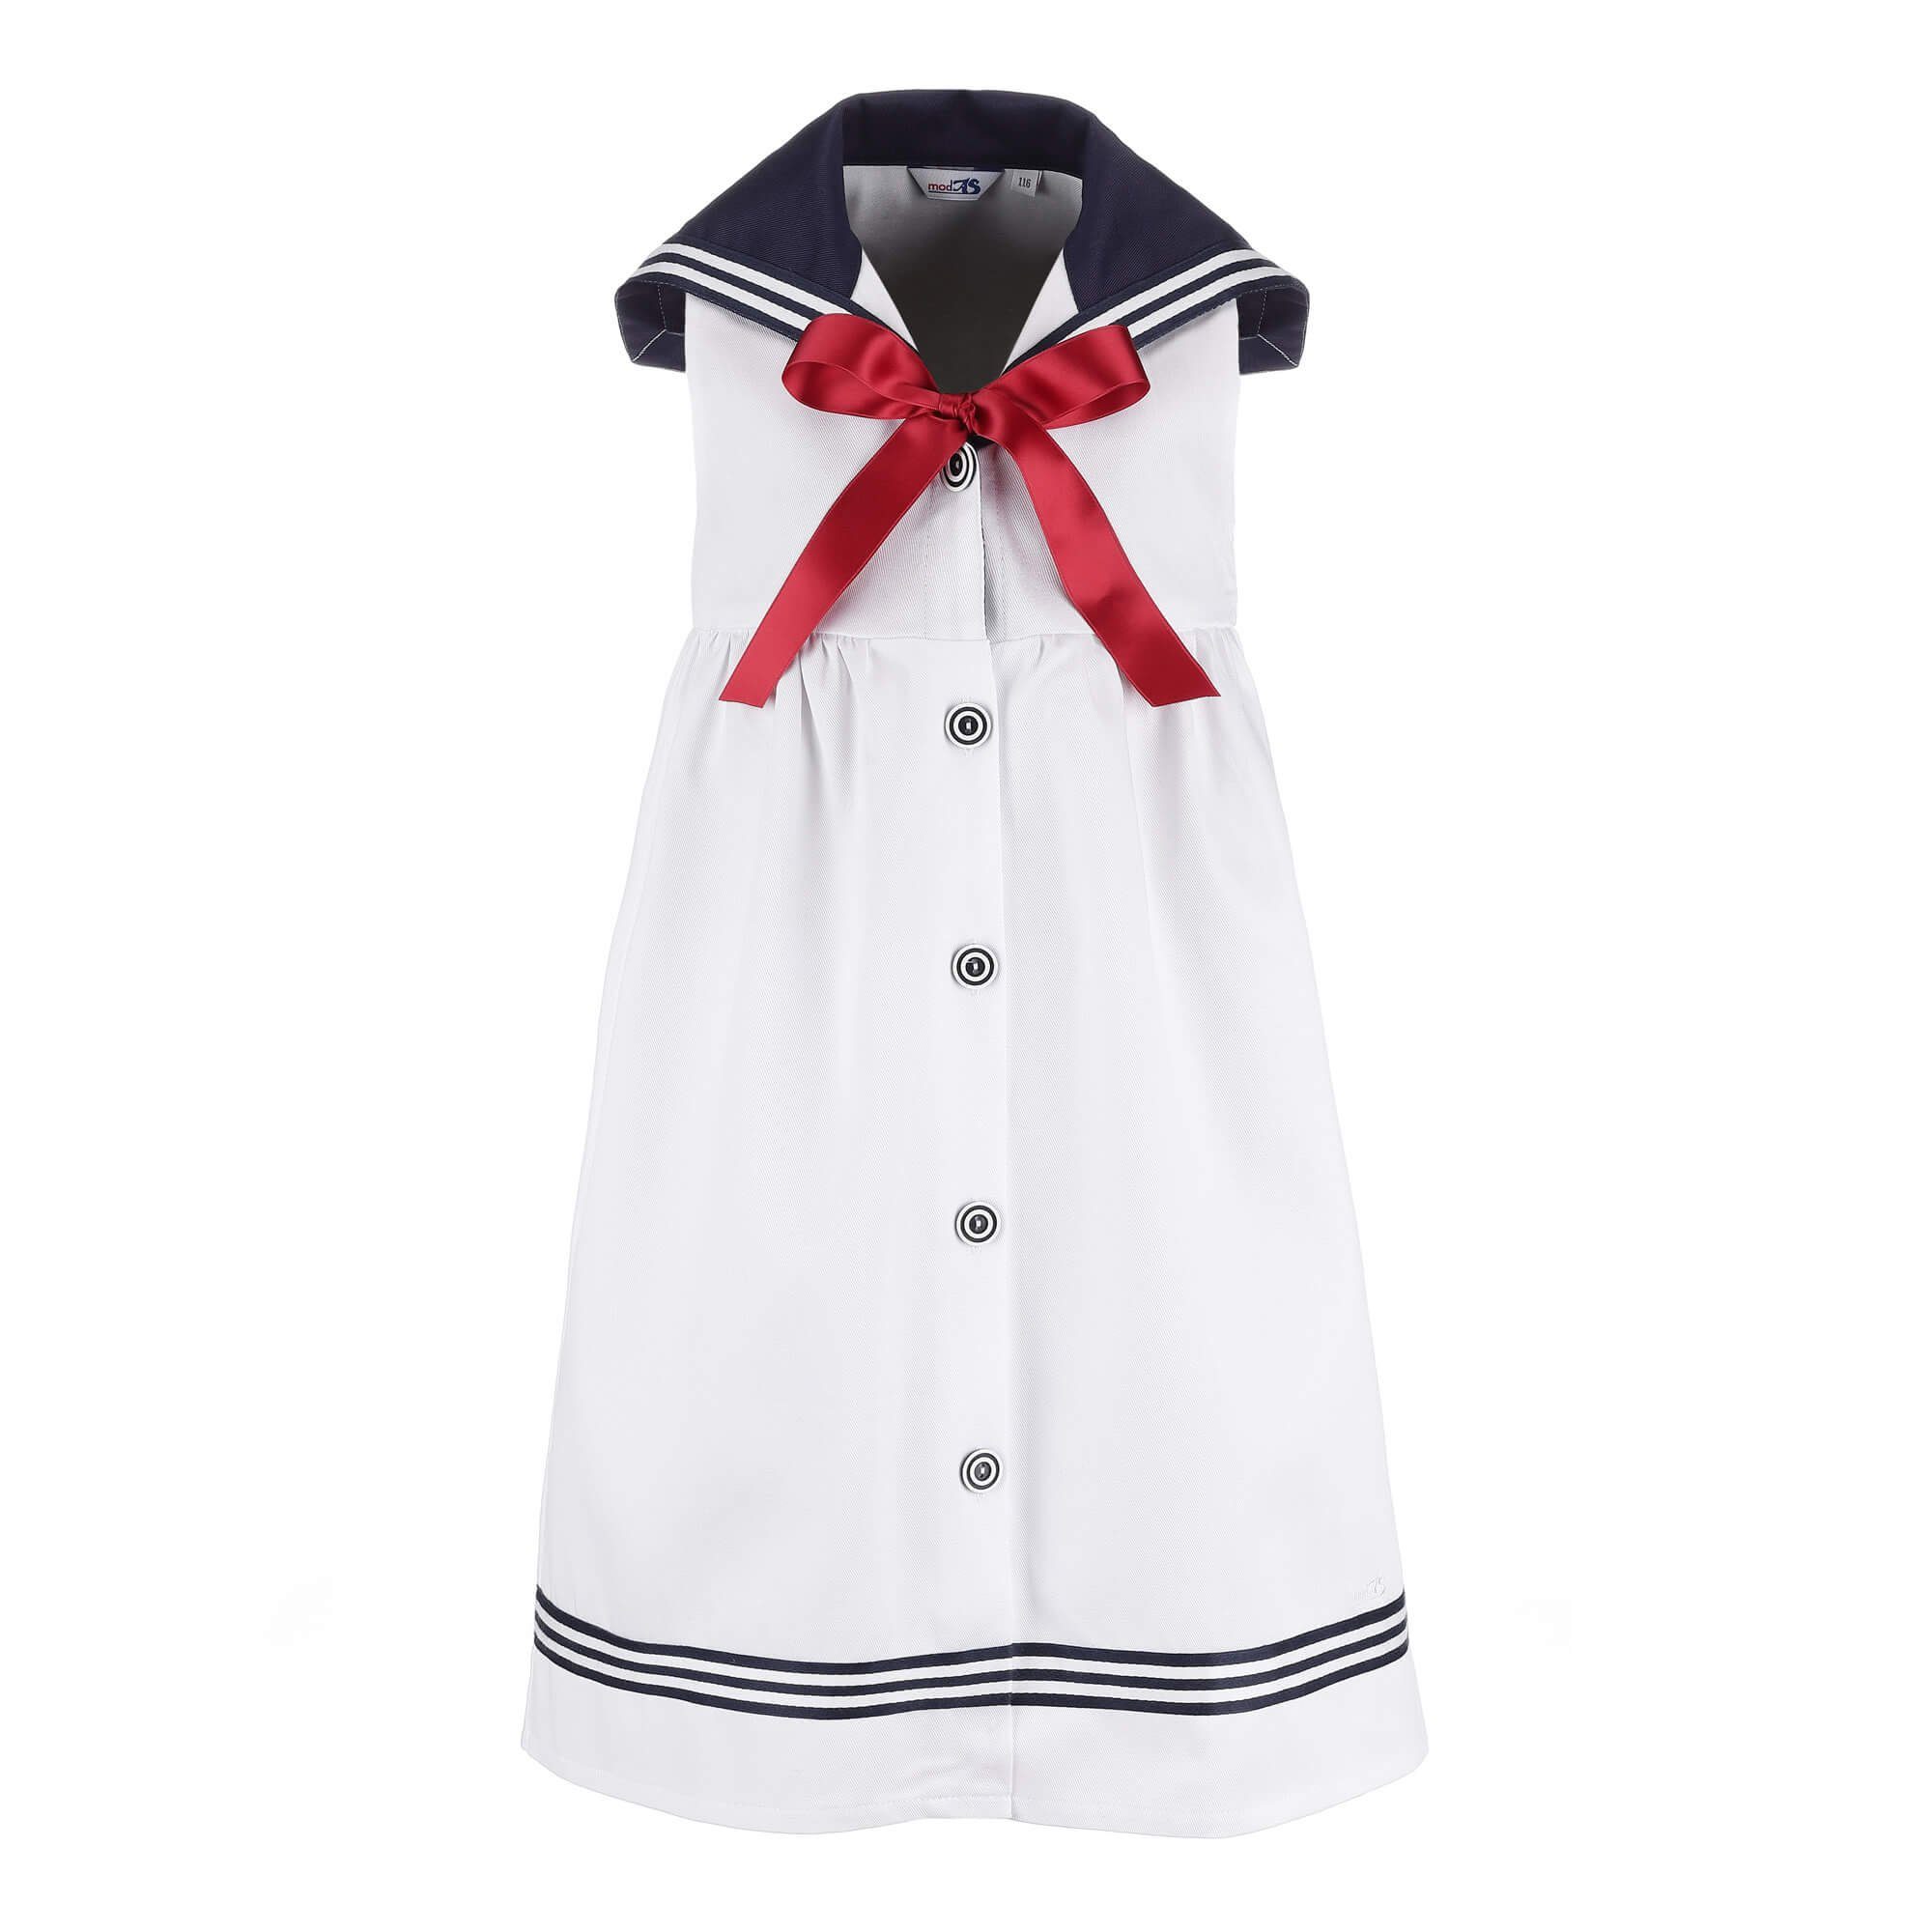 modAS Sommerkleid Kinder Matrosenkleid ärmellos - Maritimes Kleid mit großem Kragen (01) weiß